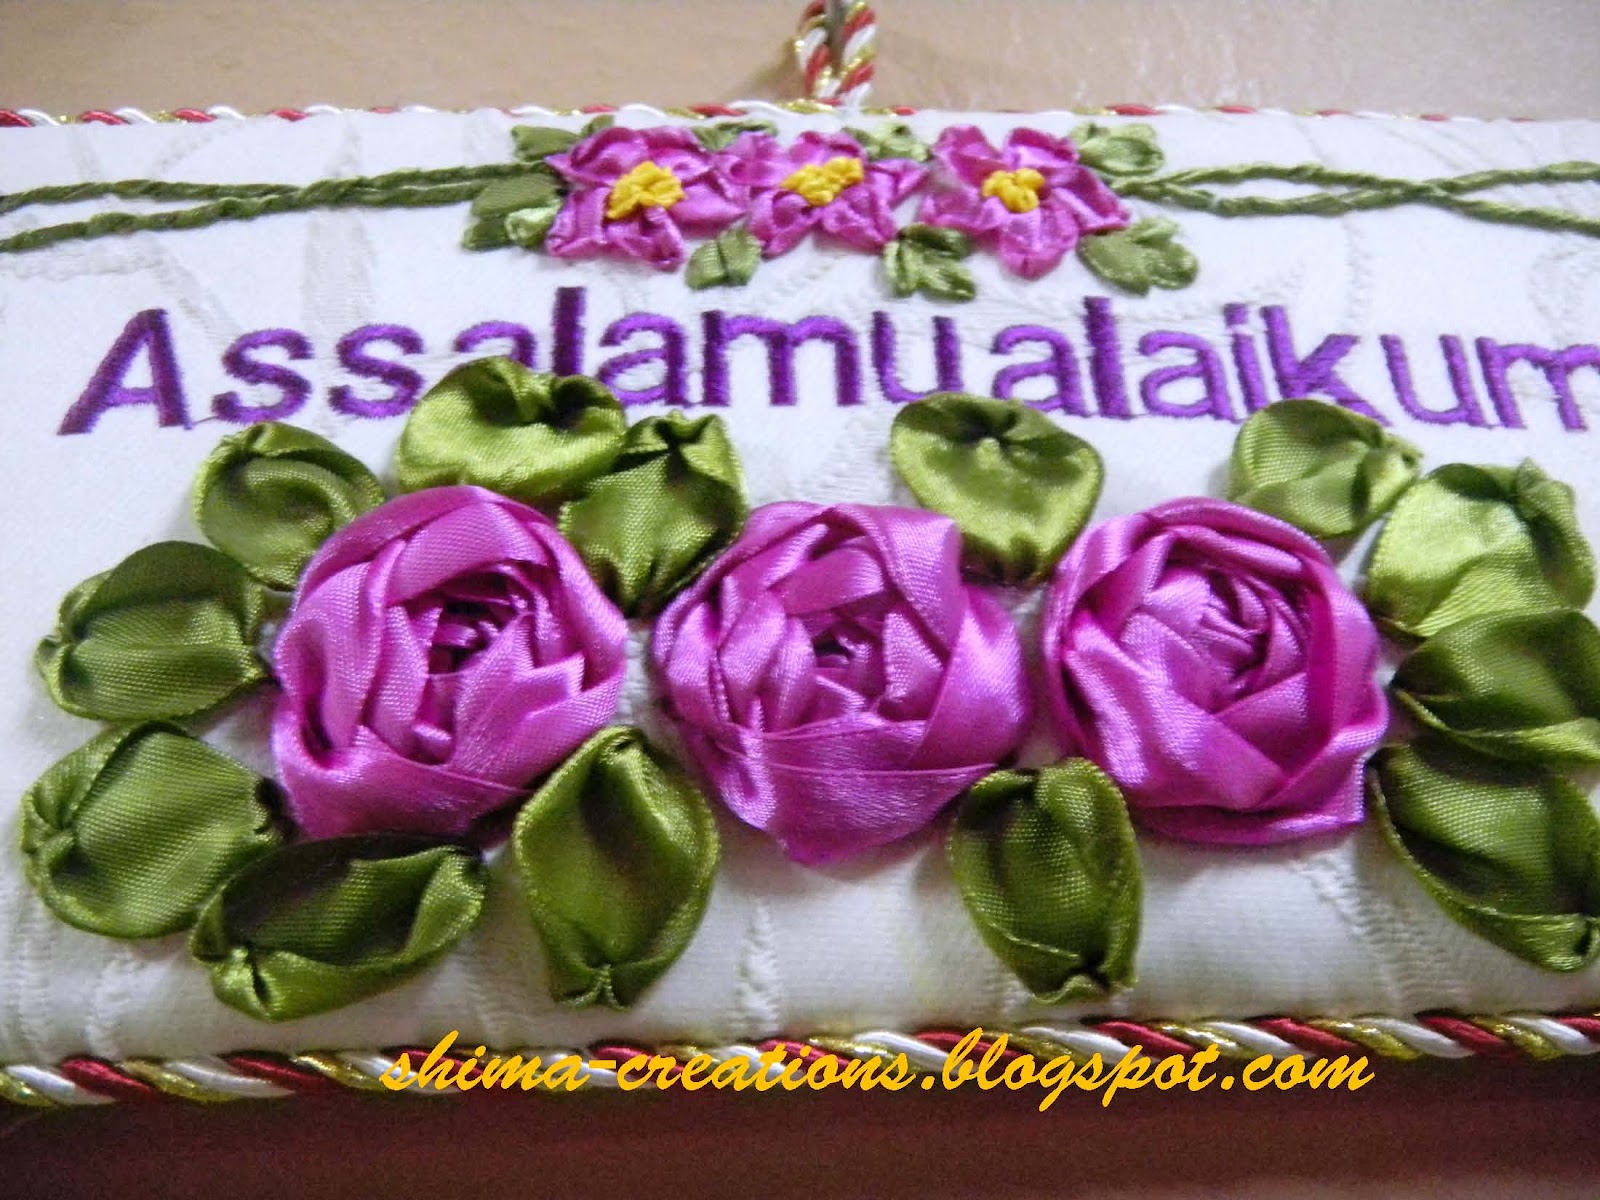 Flower Images Of Assalamu Alaikum , HD Wallpaper & Backgrounds